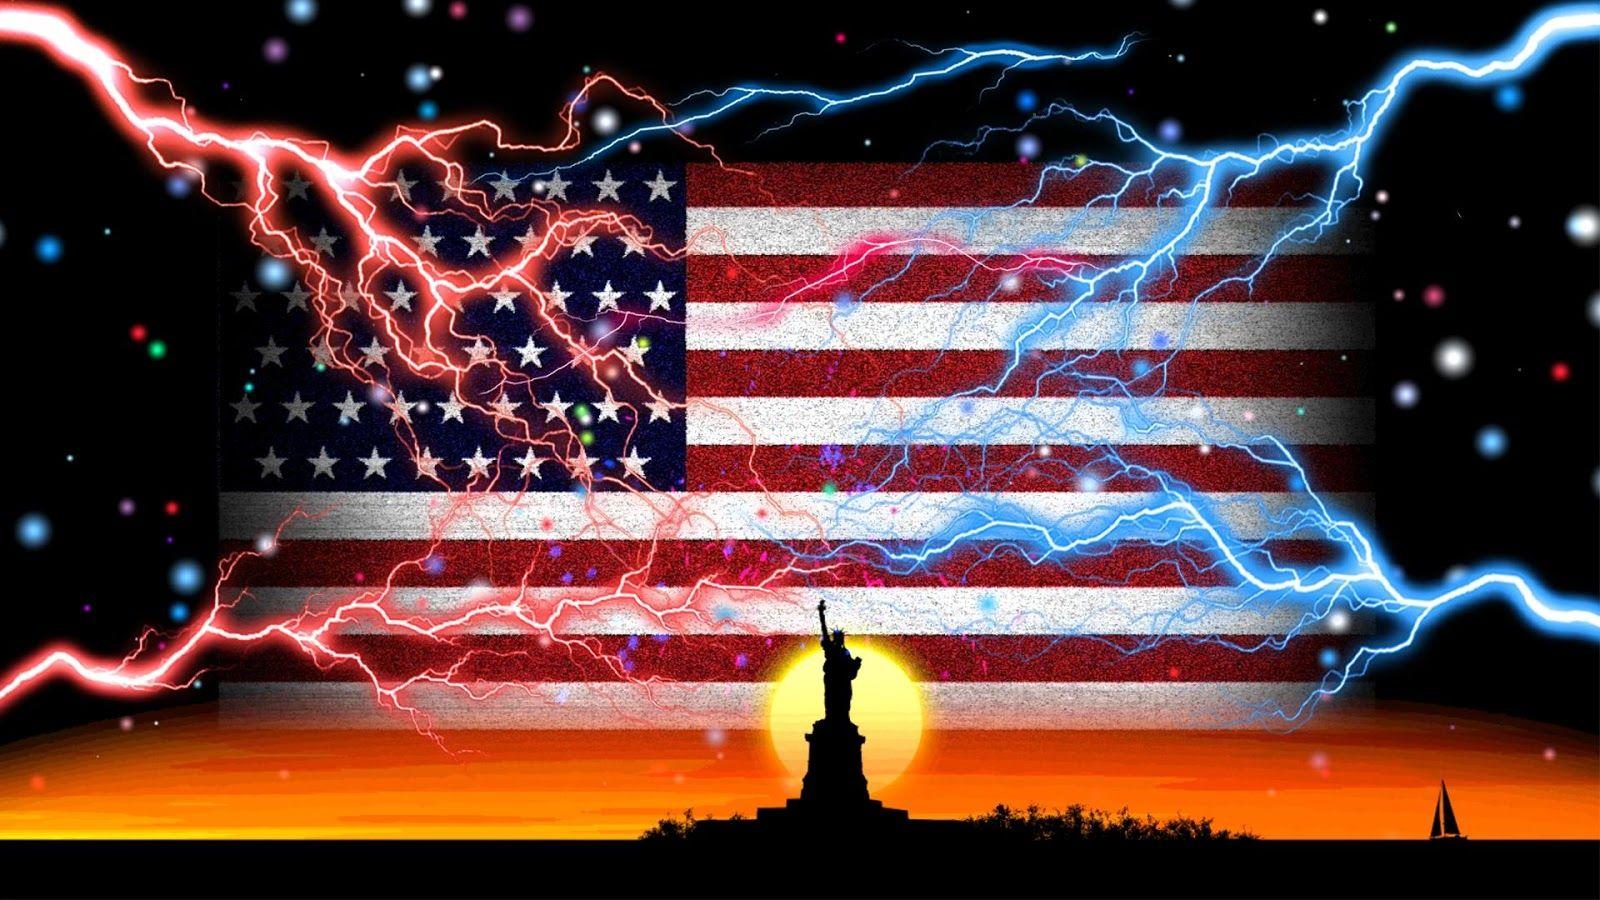 Cool USA Flag Wallpapers - Top Hình Ảnh Đẹp